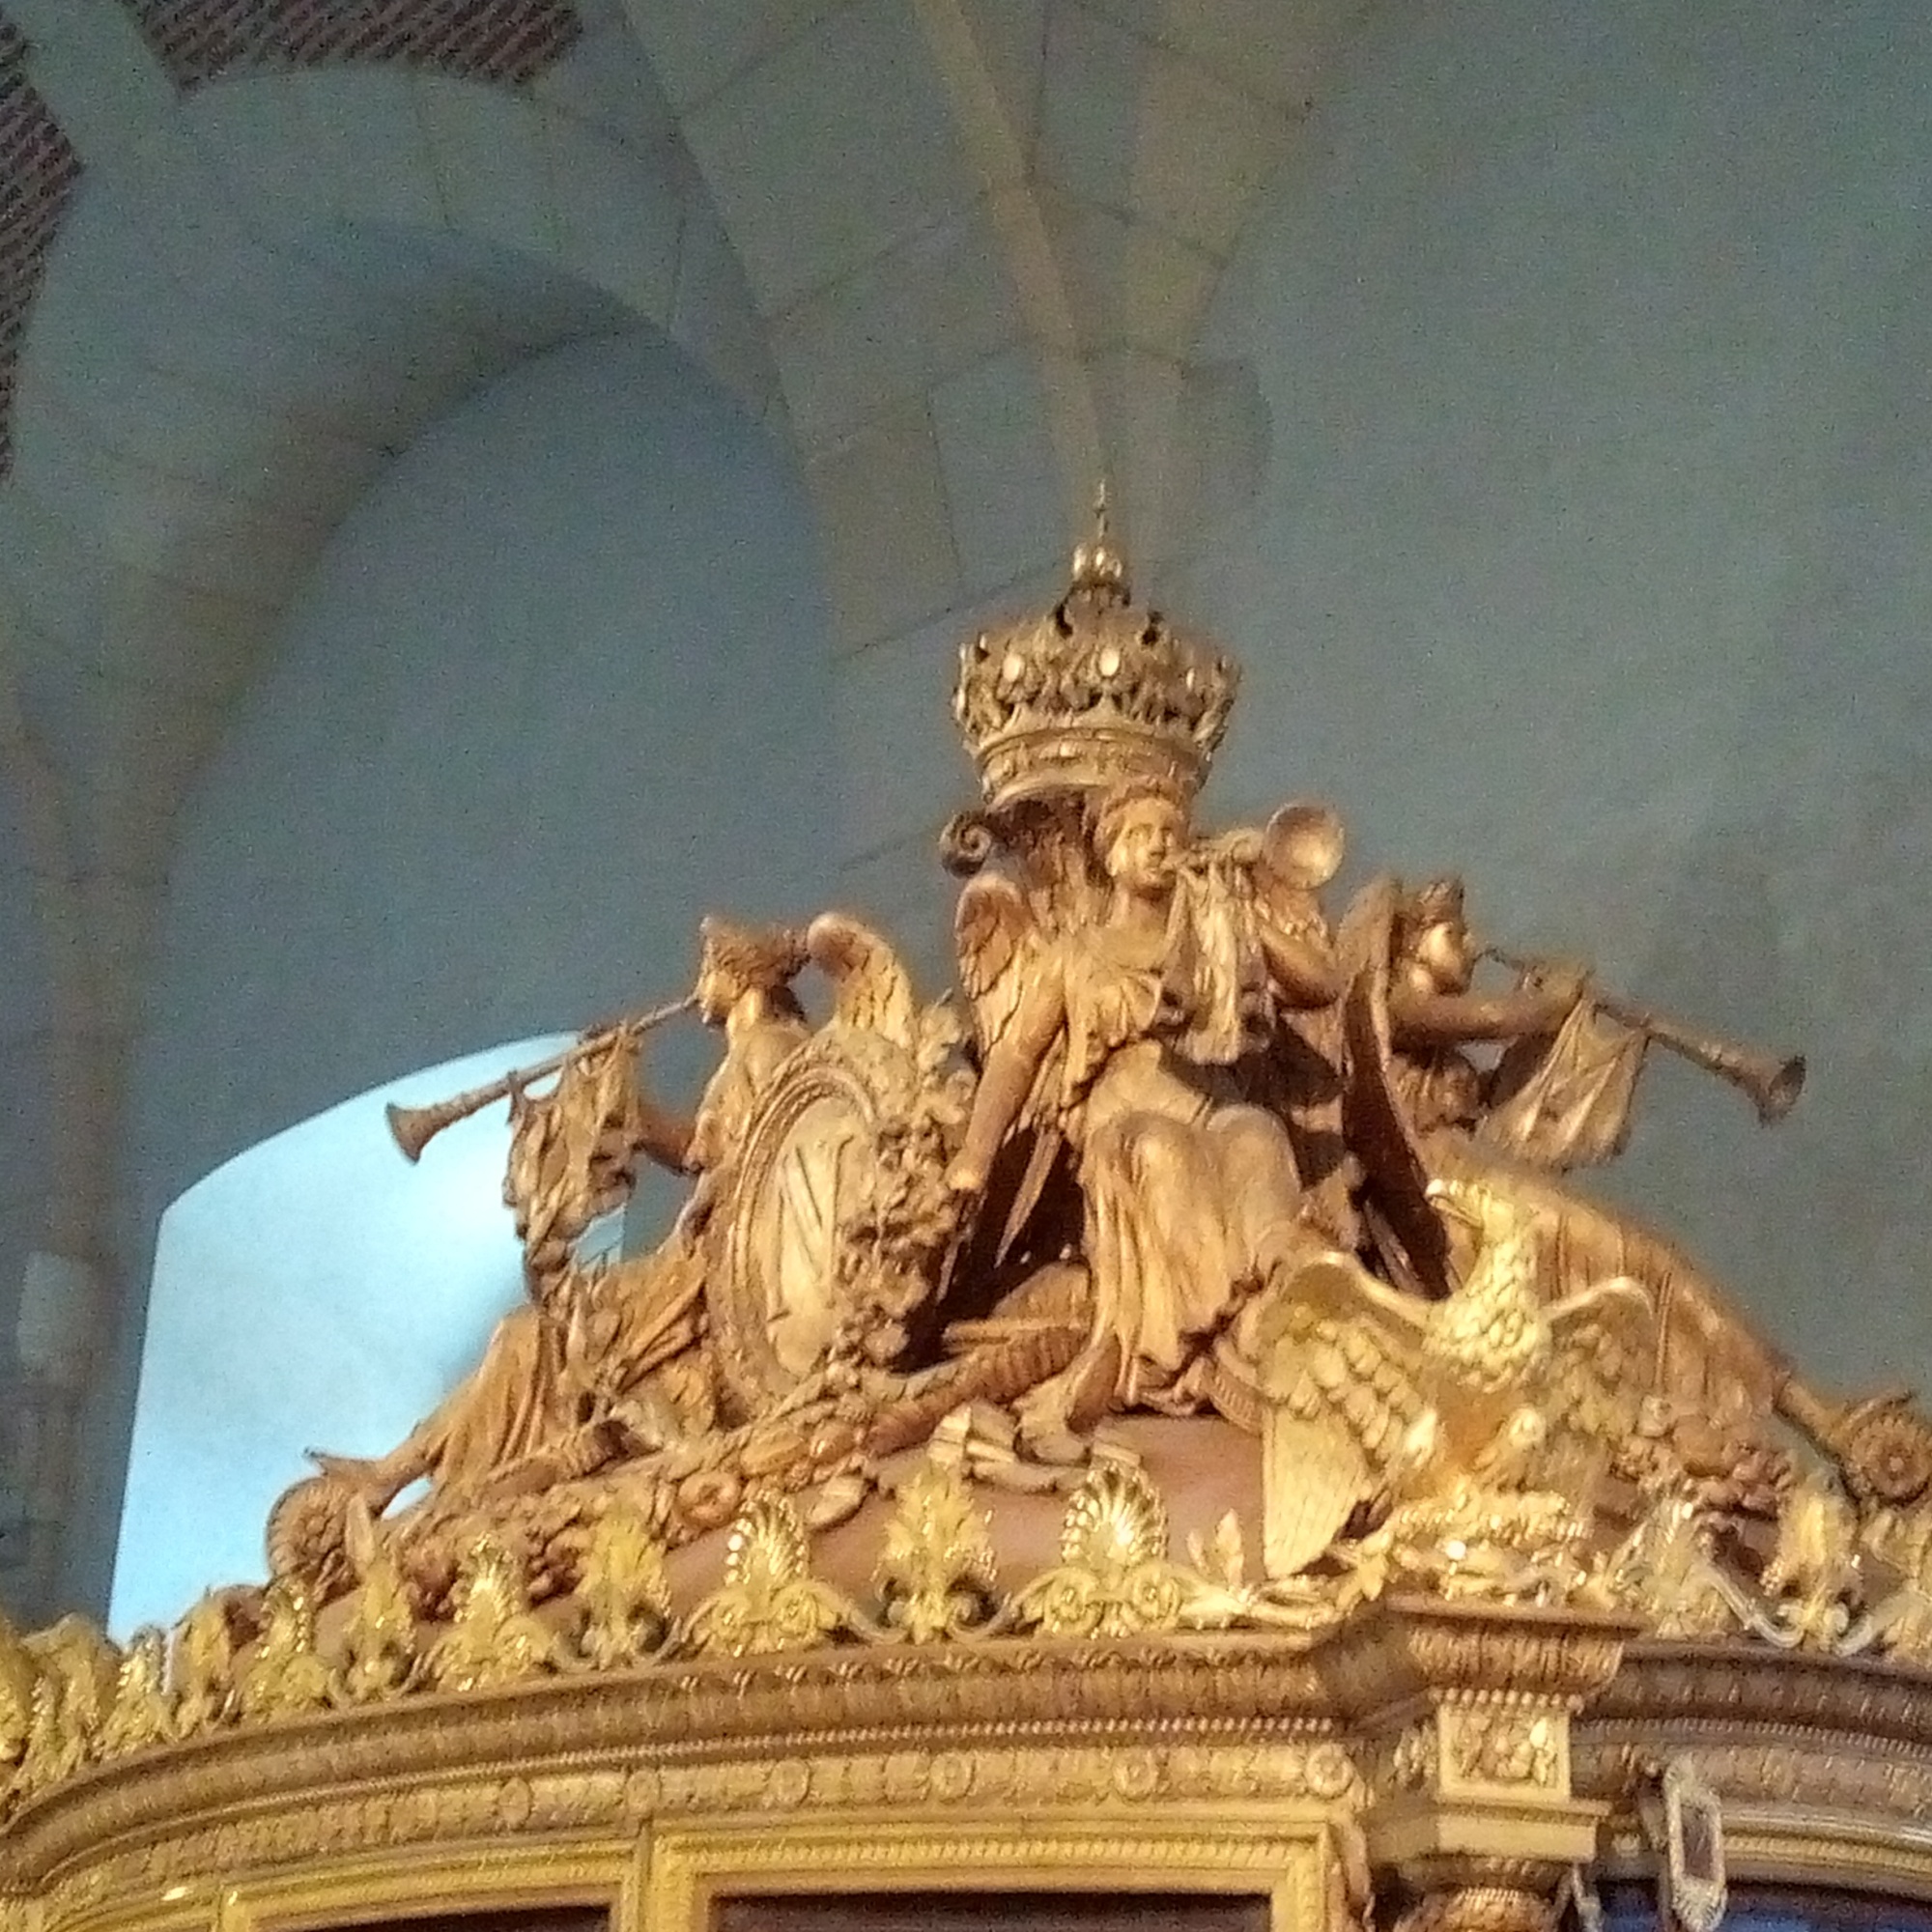 Galerie des Carrosses du château de Versailles, sacre de Charles X